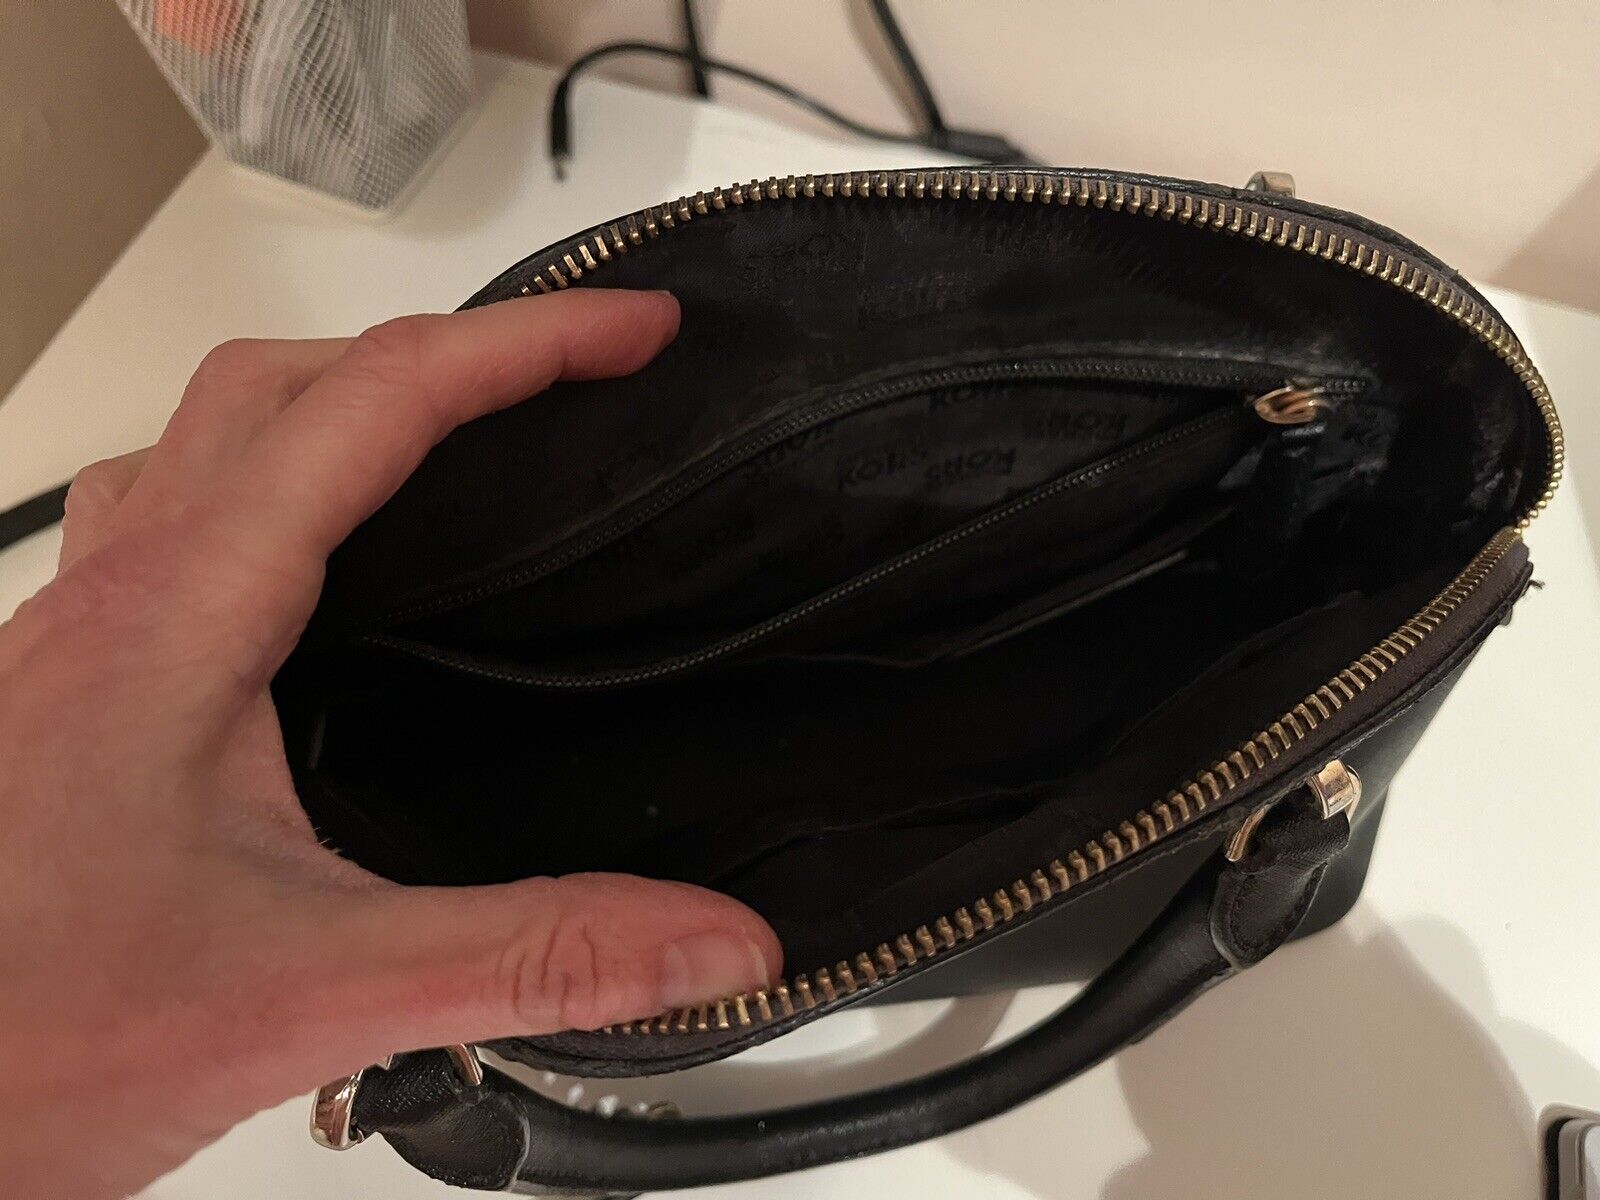 used michael kors leather handbags | eBay